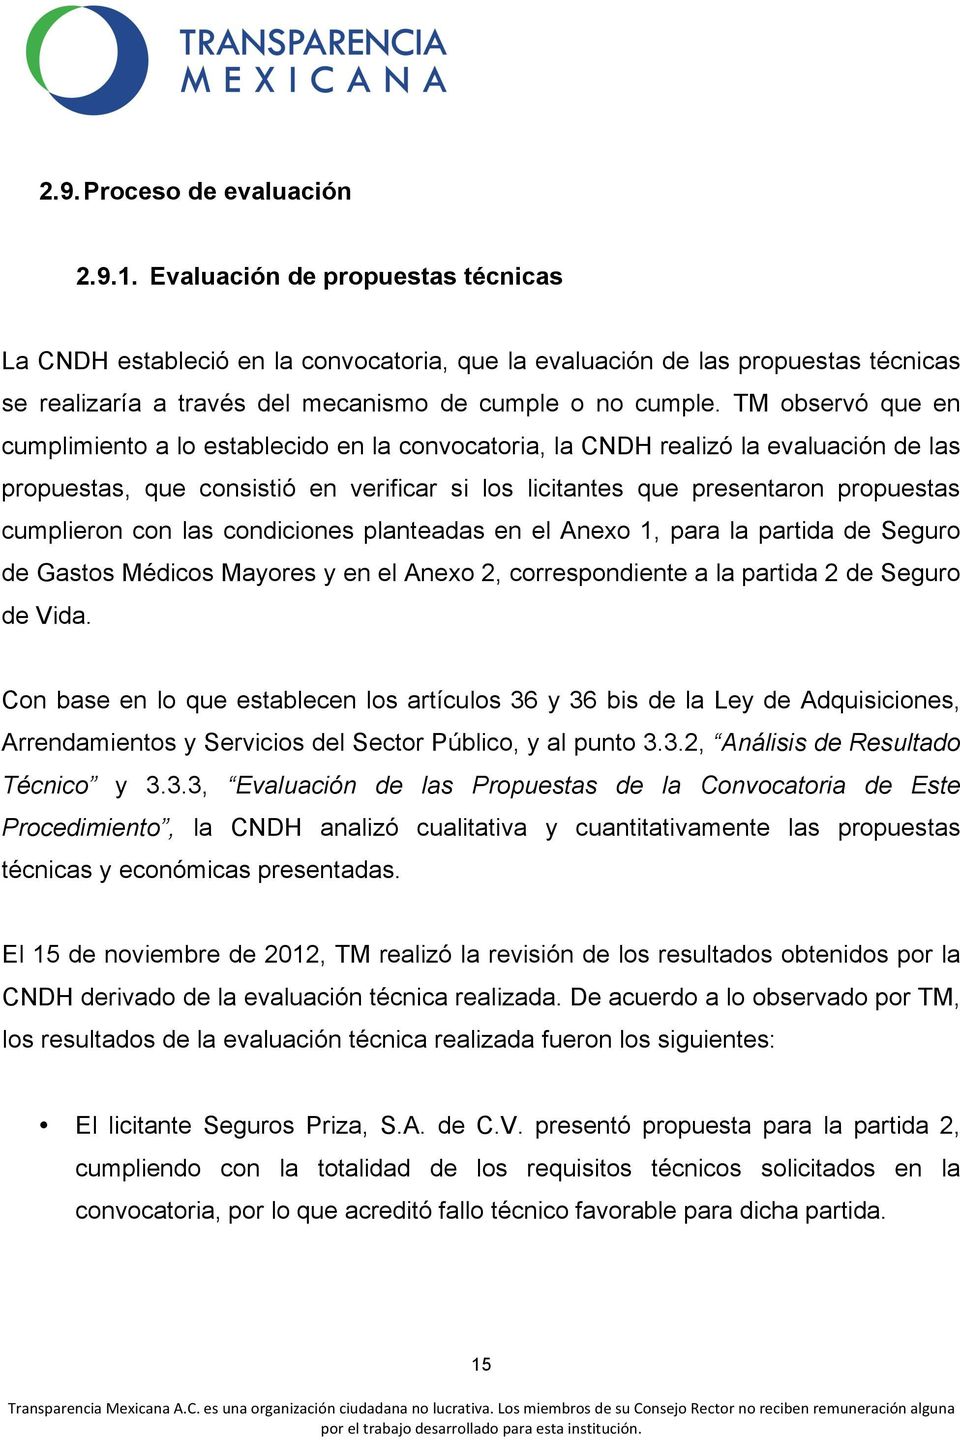 TM observó que en cumplimiento a lo establecido en la convocatoria, la CNDH realizó la evaluación de las propuestas, que consistió en verificar si los licitantes que presentaron propuestas cumplieron